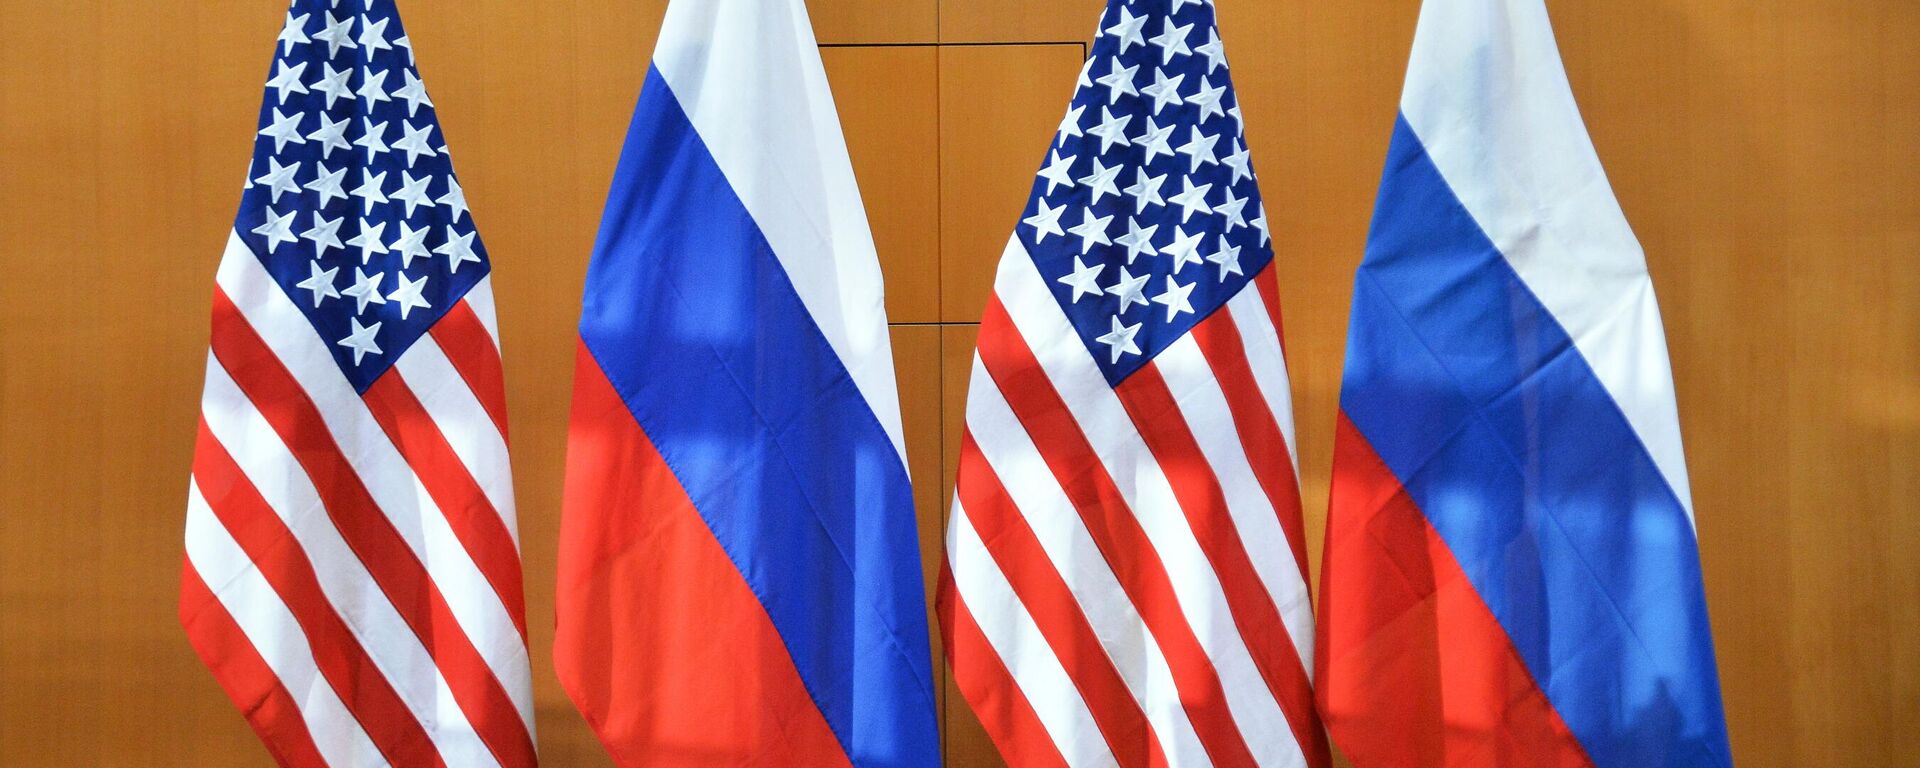 Em Genebra, na Suíça, as bandeiras dos EUA e da Rússia aparecem alinhadas durante encontro de representantes dos dois países em 10 de janeiro de 2022 - Sputnik Brasil, 1920, 09.12.2022